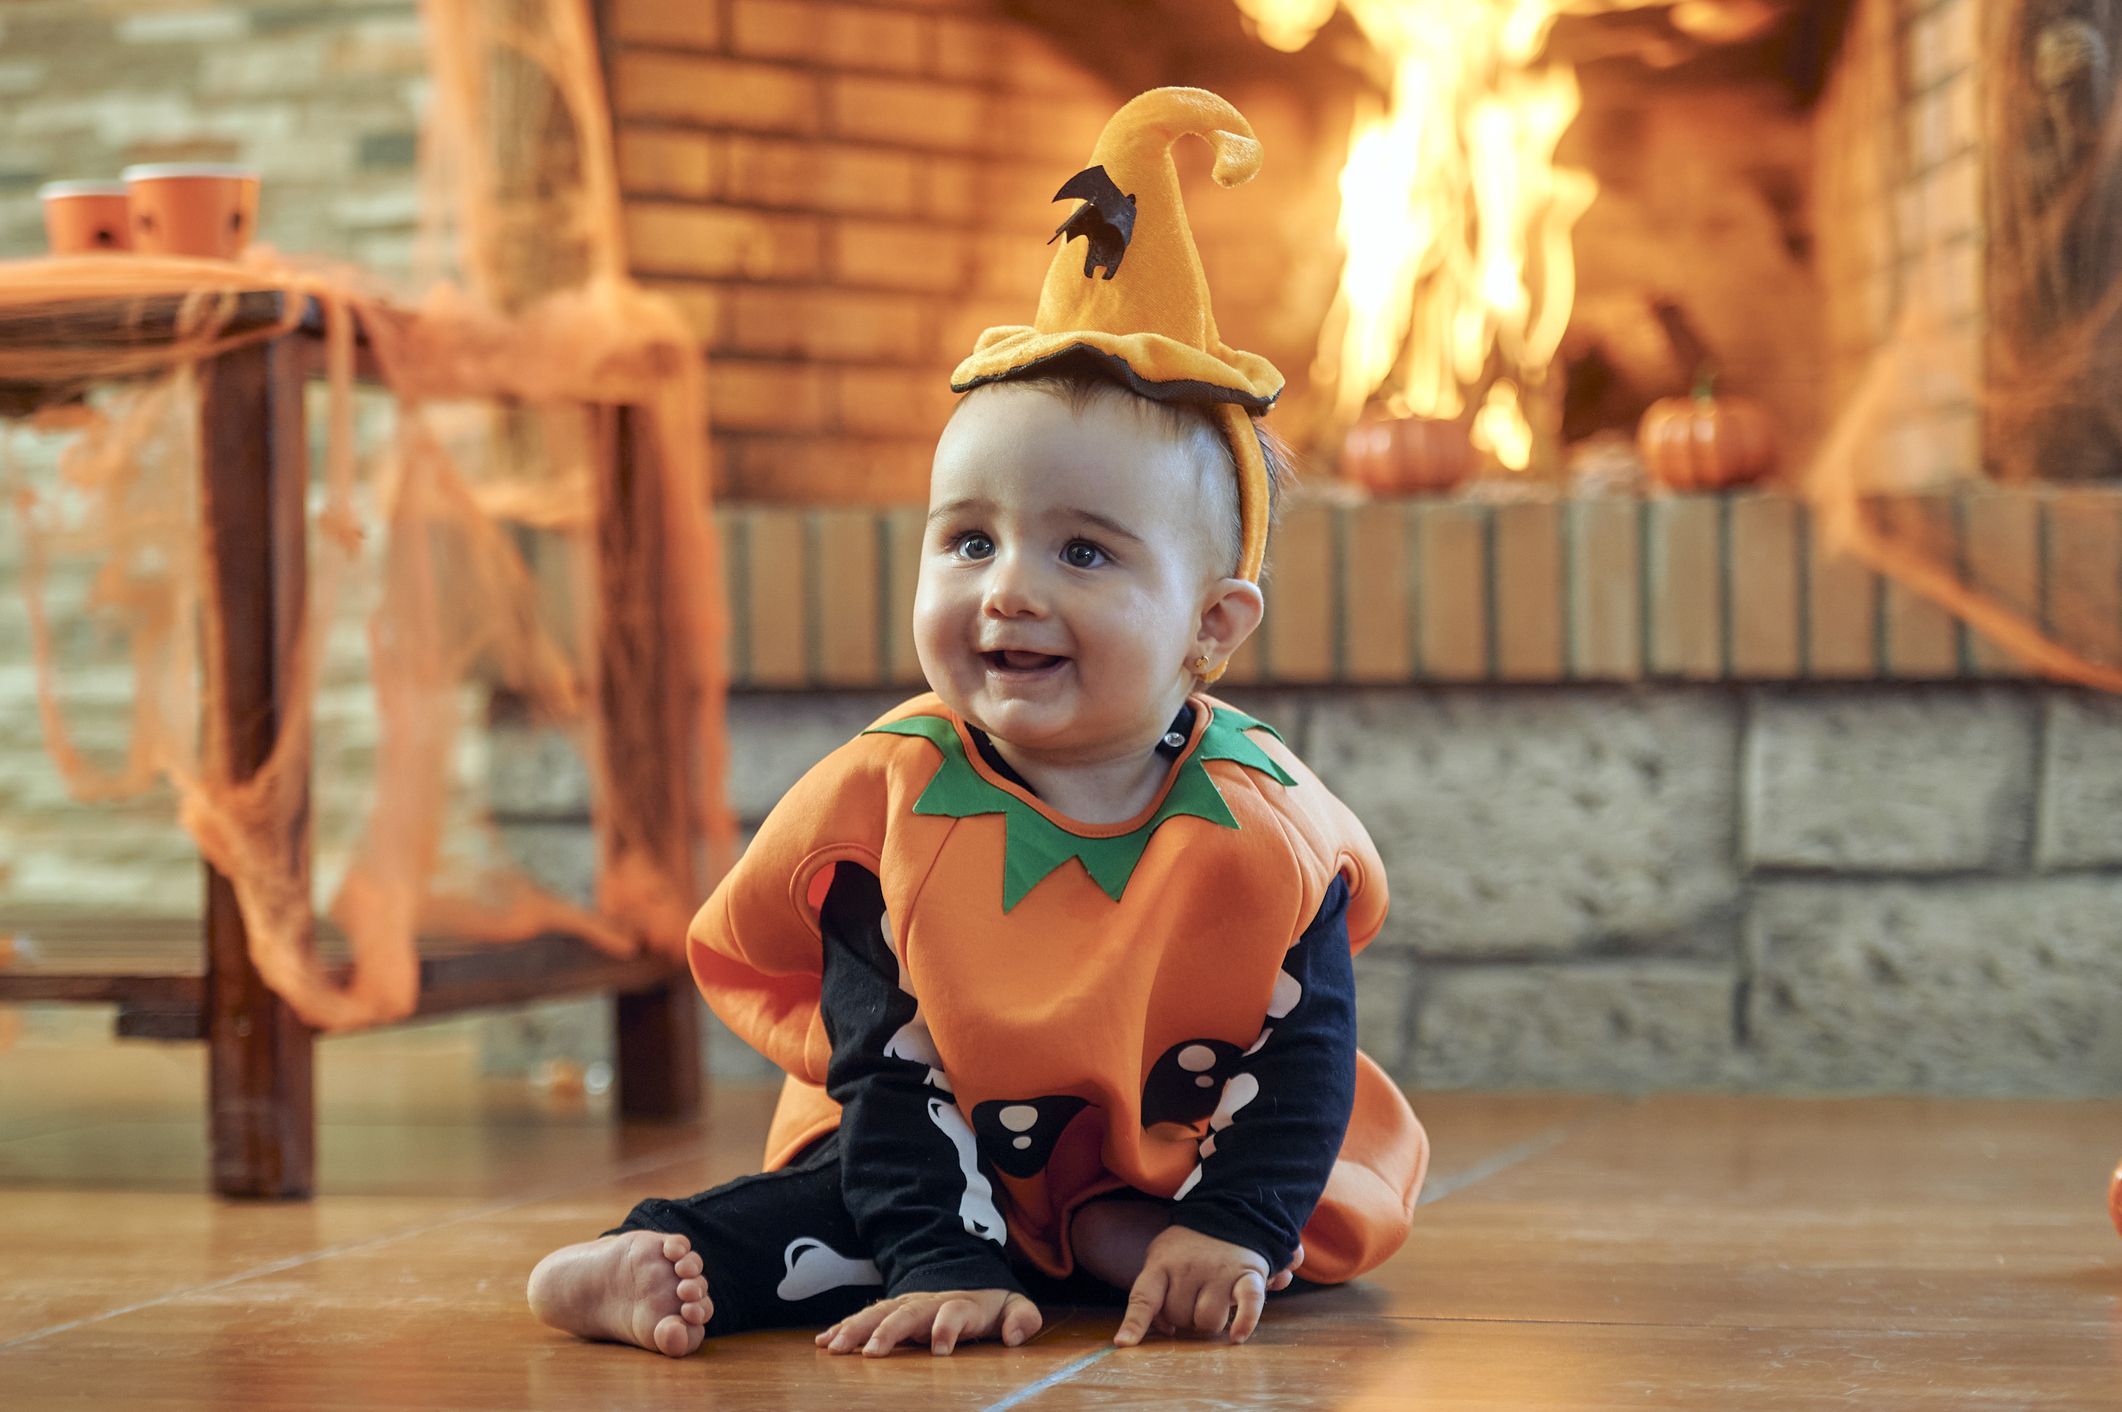 Audaz rescate código Morse Disfraces de bebés e ideas para celebrar Halloween